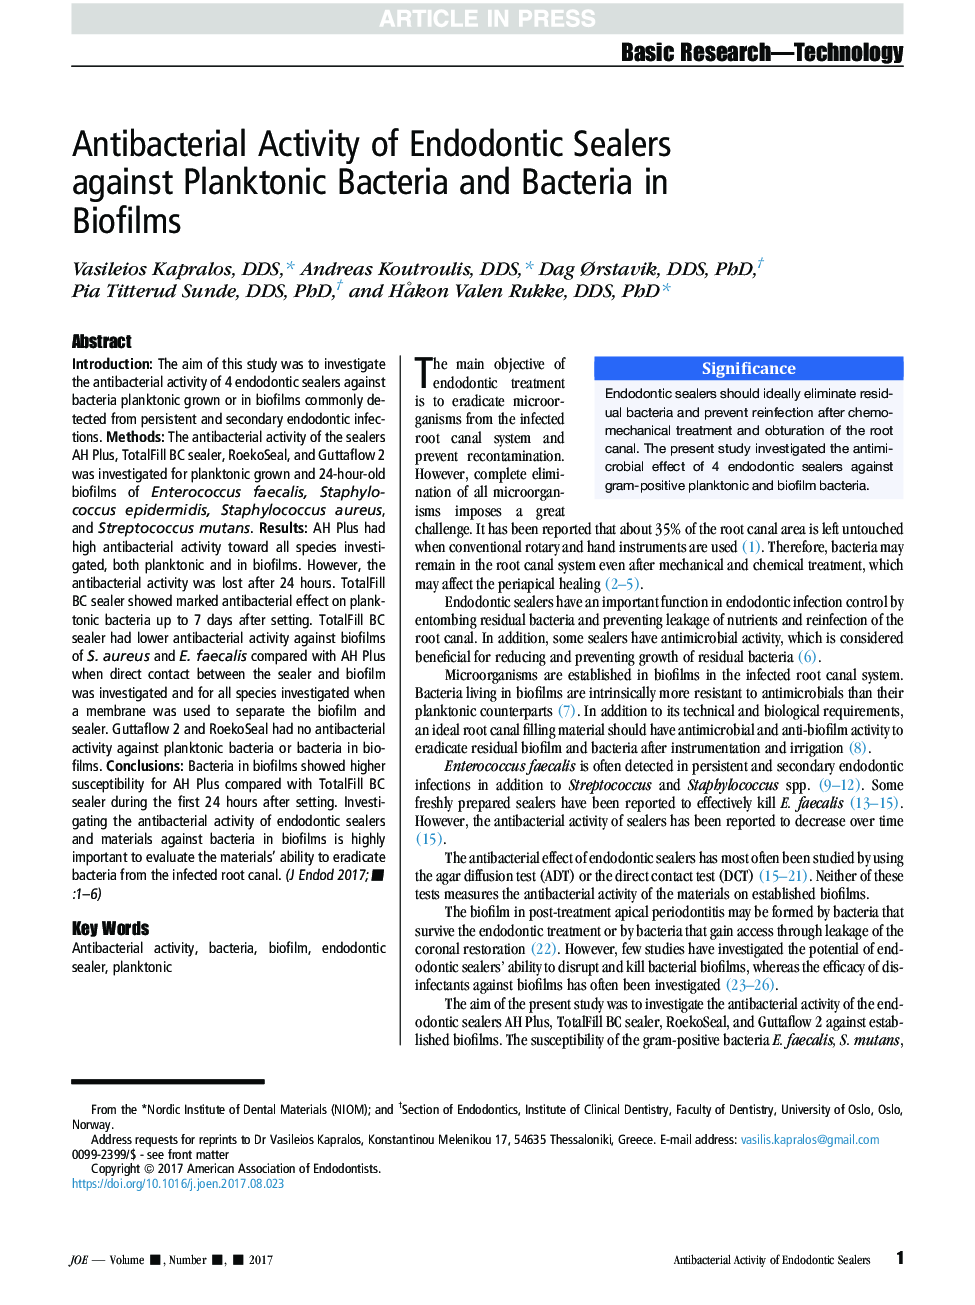 فعالیت ضدباکتریایی درزگیرهای اندودنتیکس در برابر باکتری‌های پلانکتونیک و باکتری‌ها در بیوفیلم‌ها